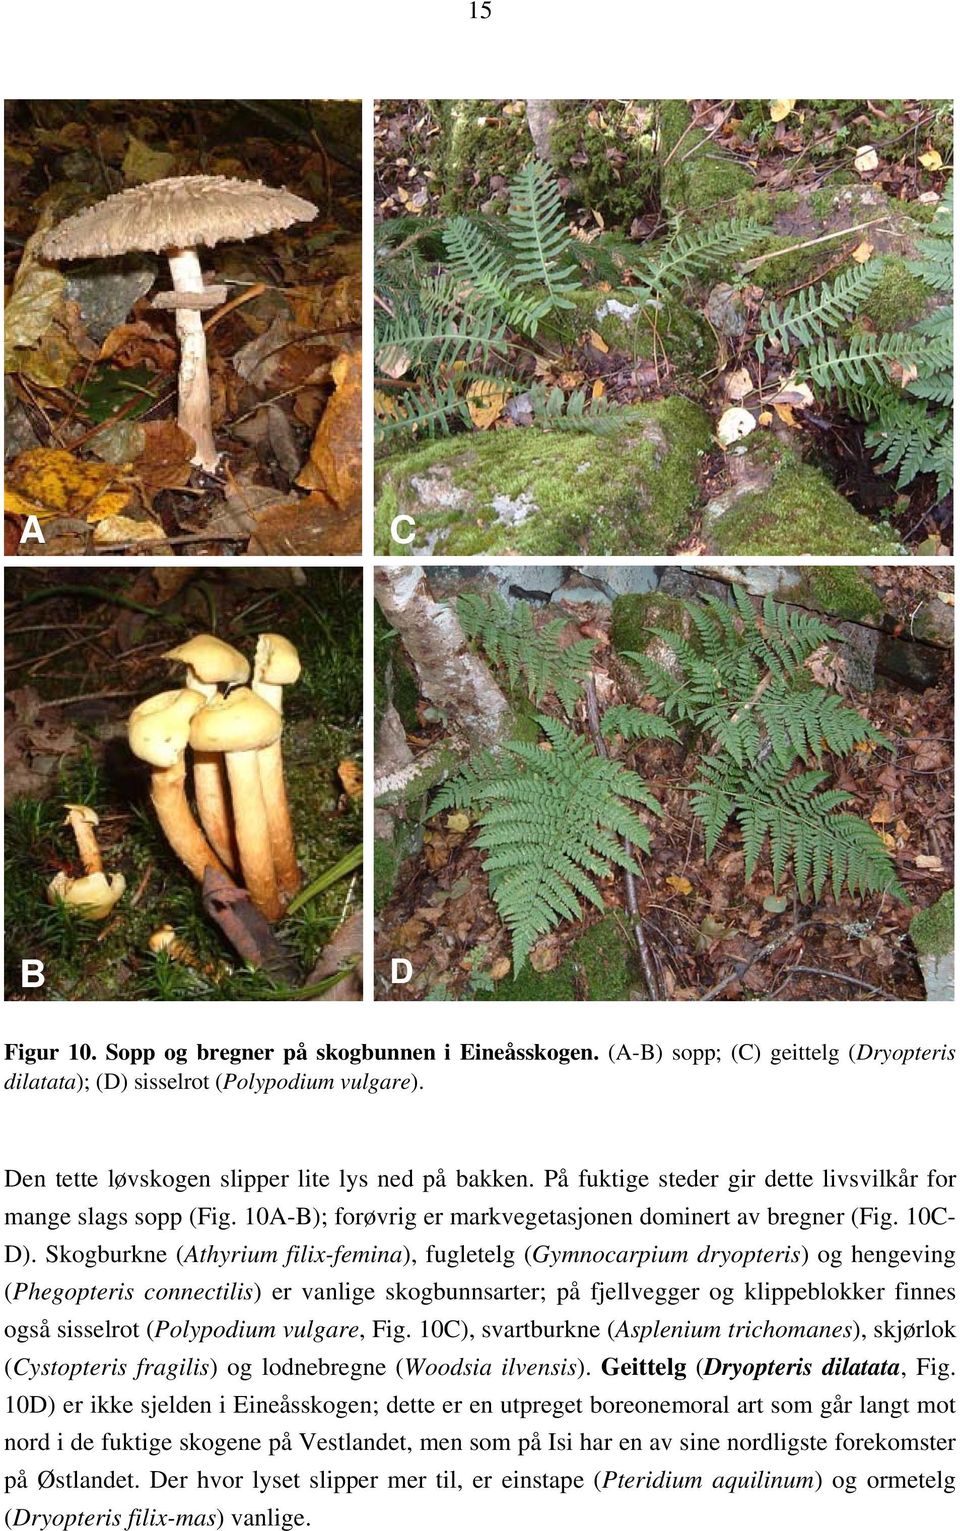 Skogburkne (Athyrium filix-femina), fugletelg (Gymnocarpium dryopteris) og hengeving (Phegopteris connectilis) er vanlige skogbunnsarter; på fjellvegger og klippeblokker finnes også sisselrot